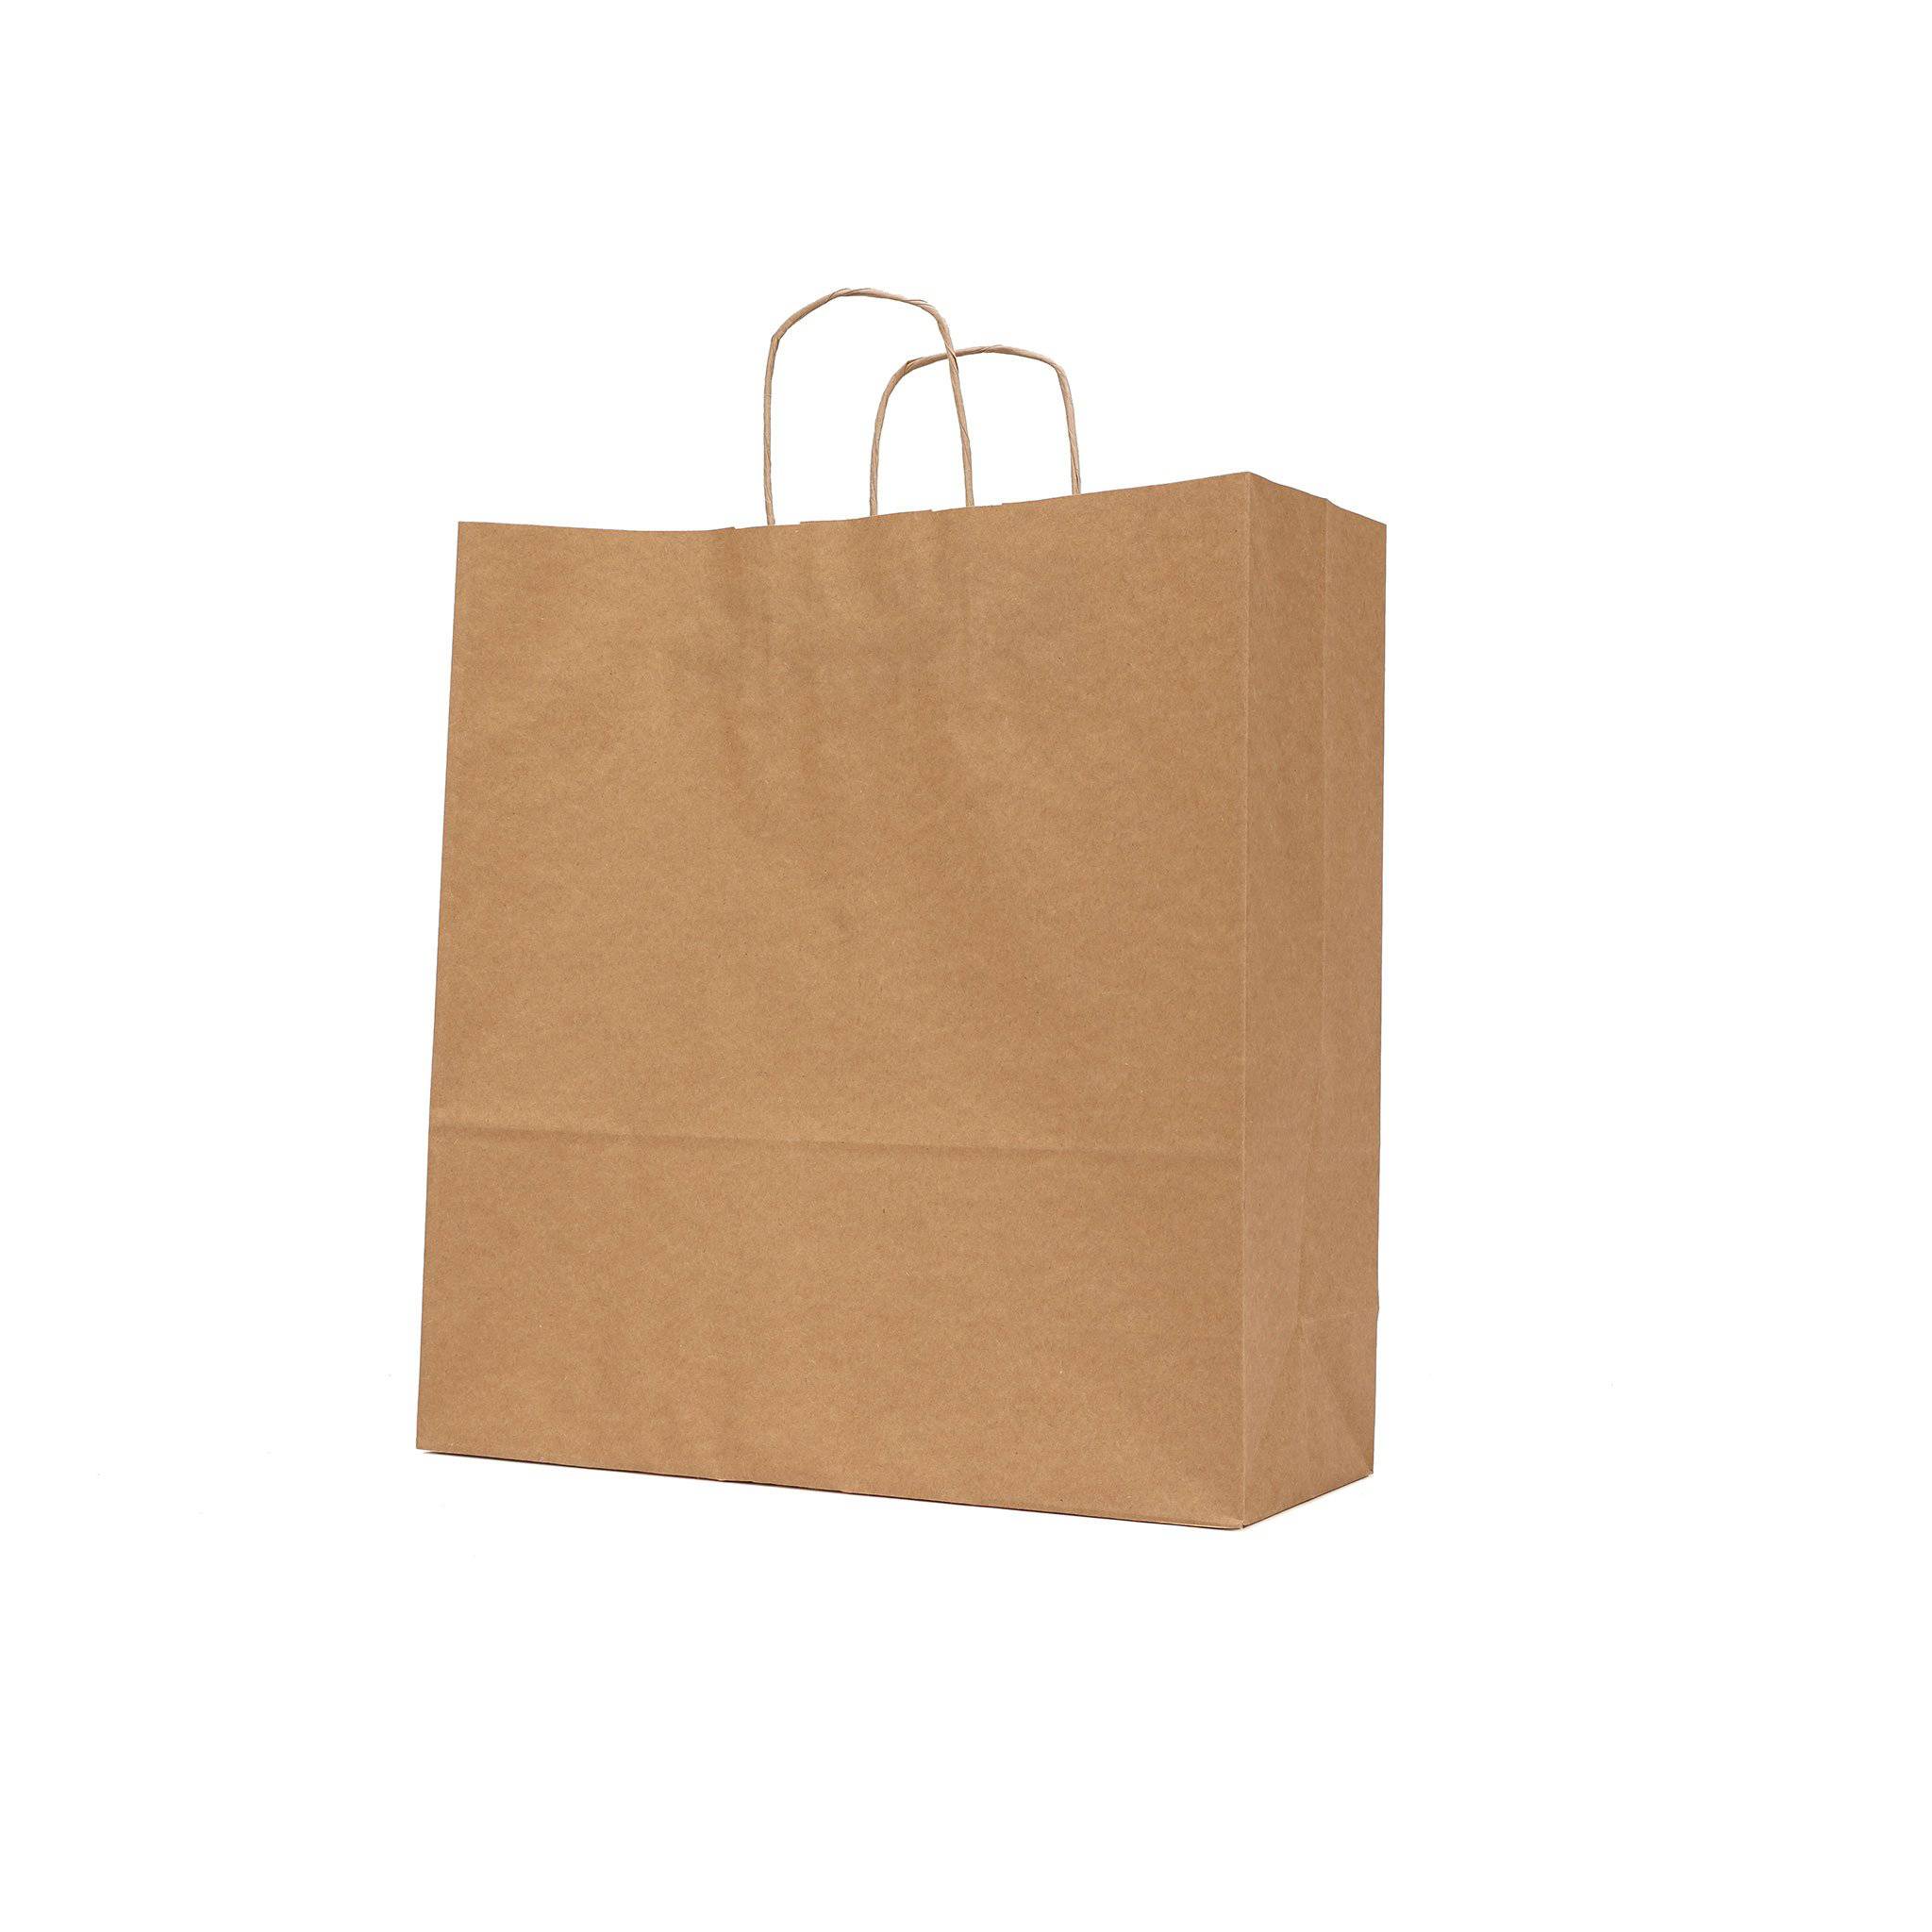 Twisted Handle Kraft Brown Paper Bag 25 Pieces - Hotpack Global